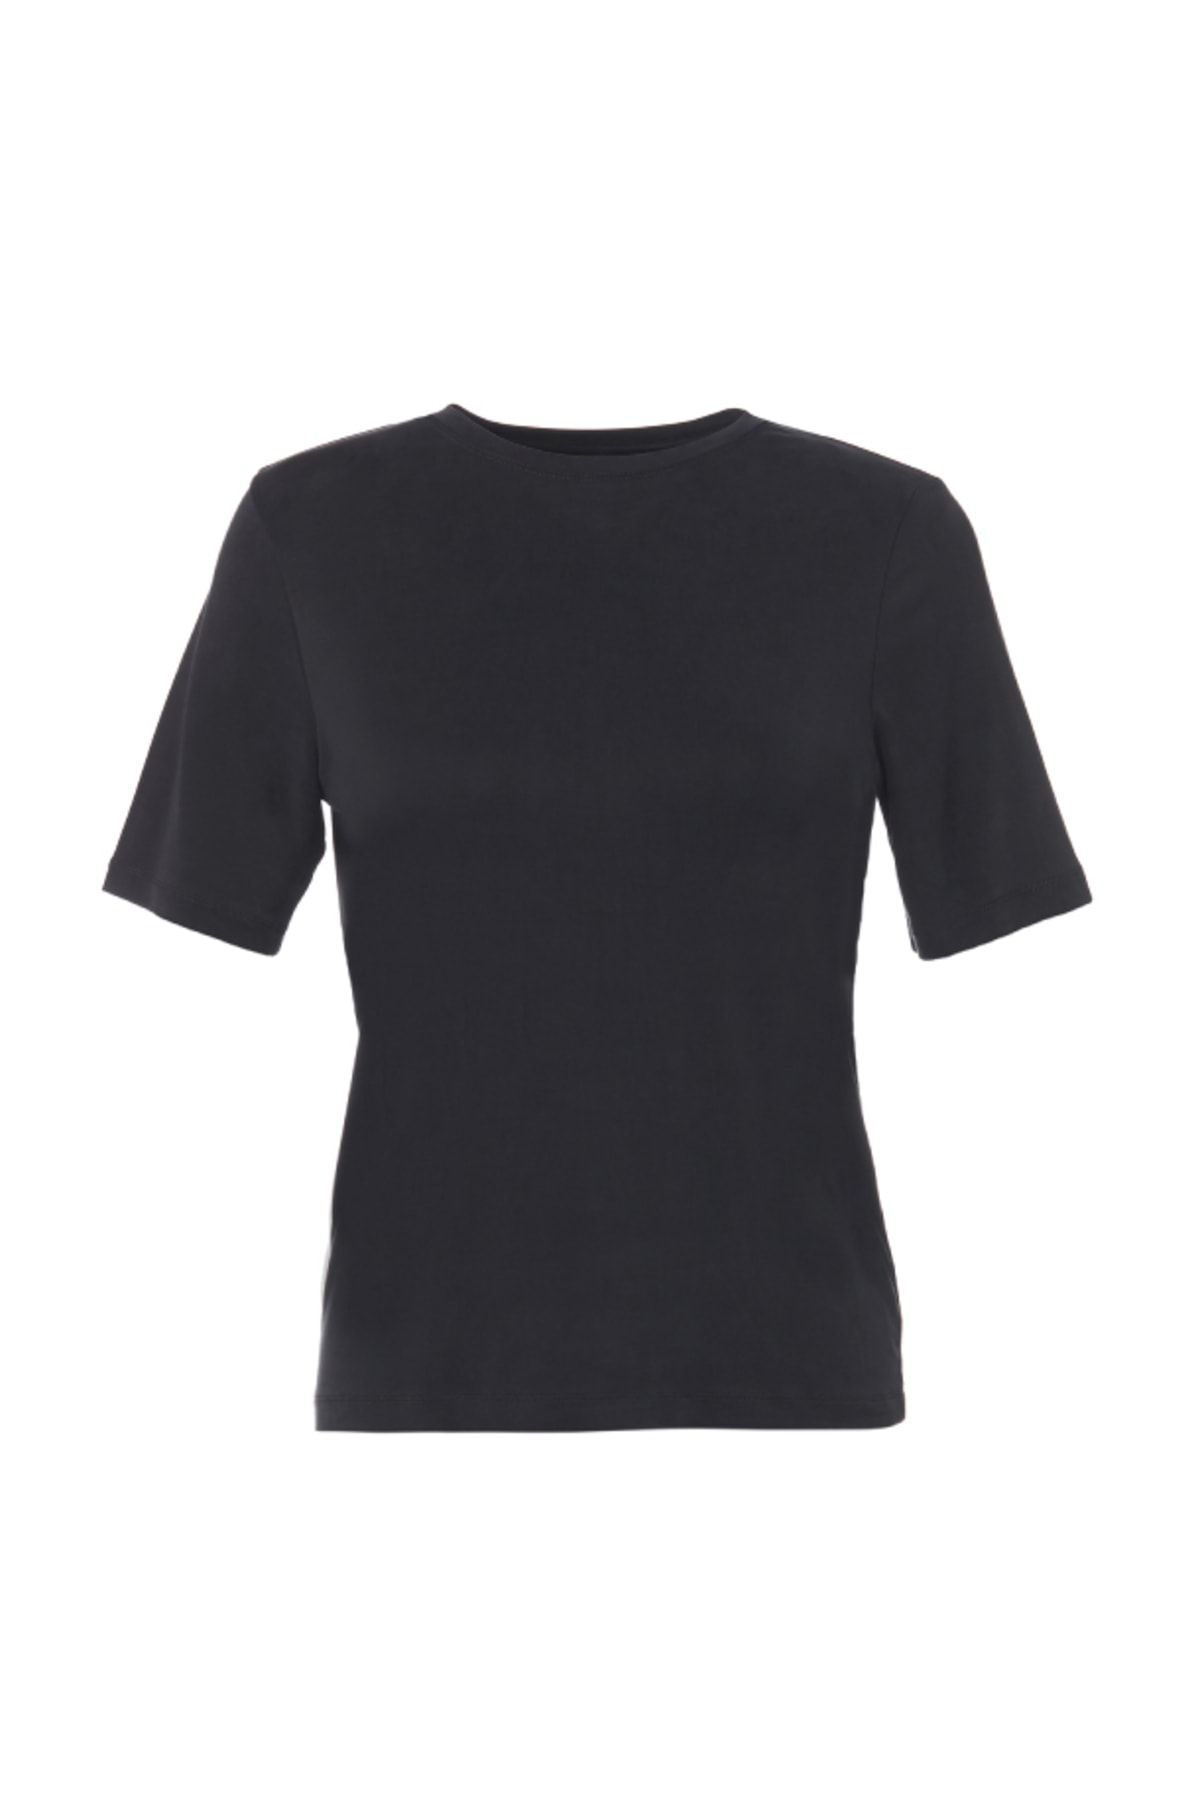 NEWRULES Kupro Basic T-Shirt